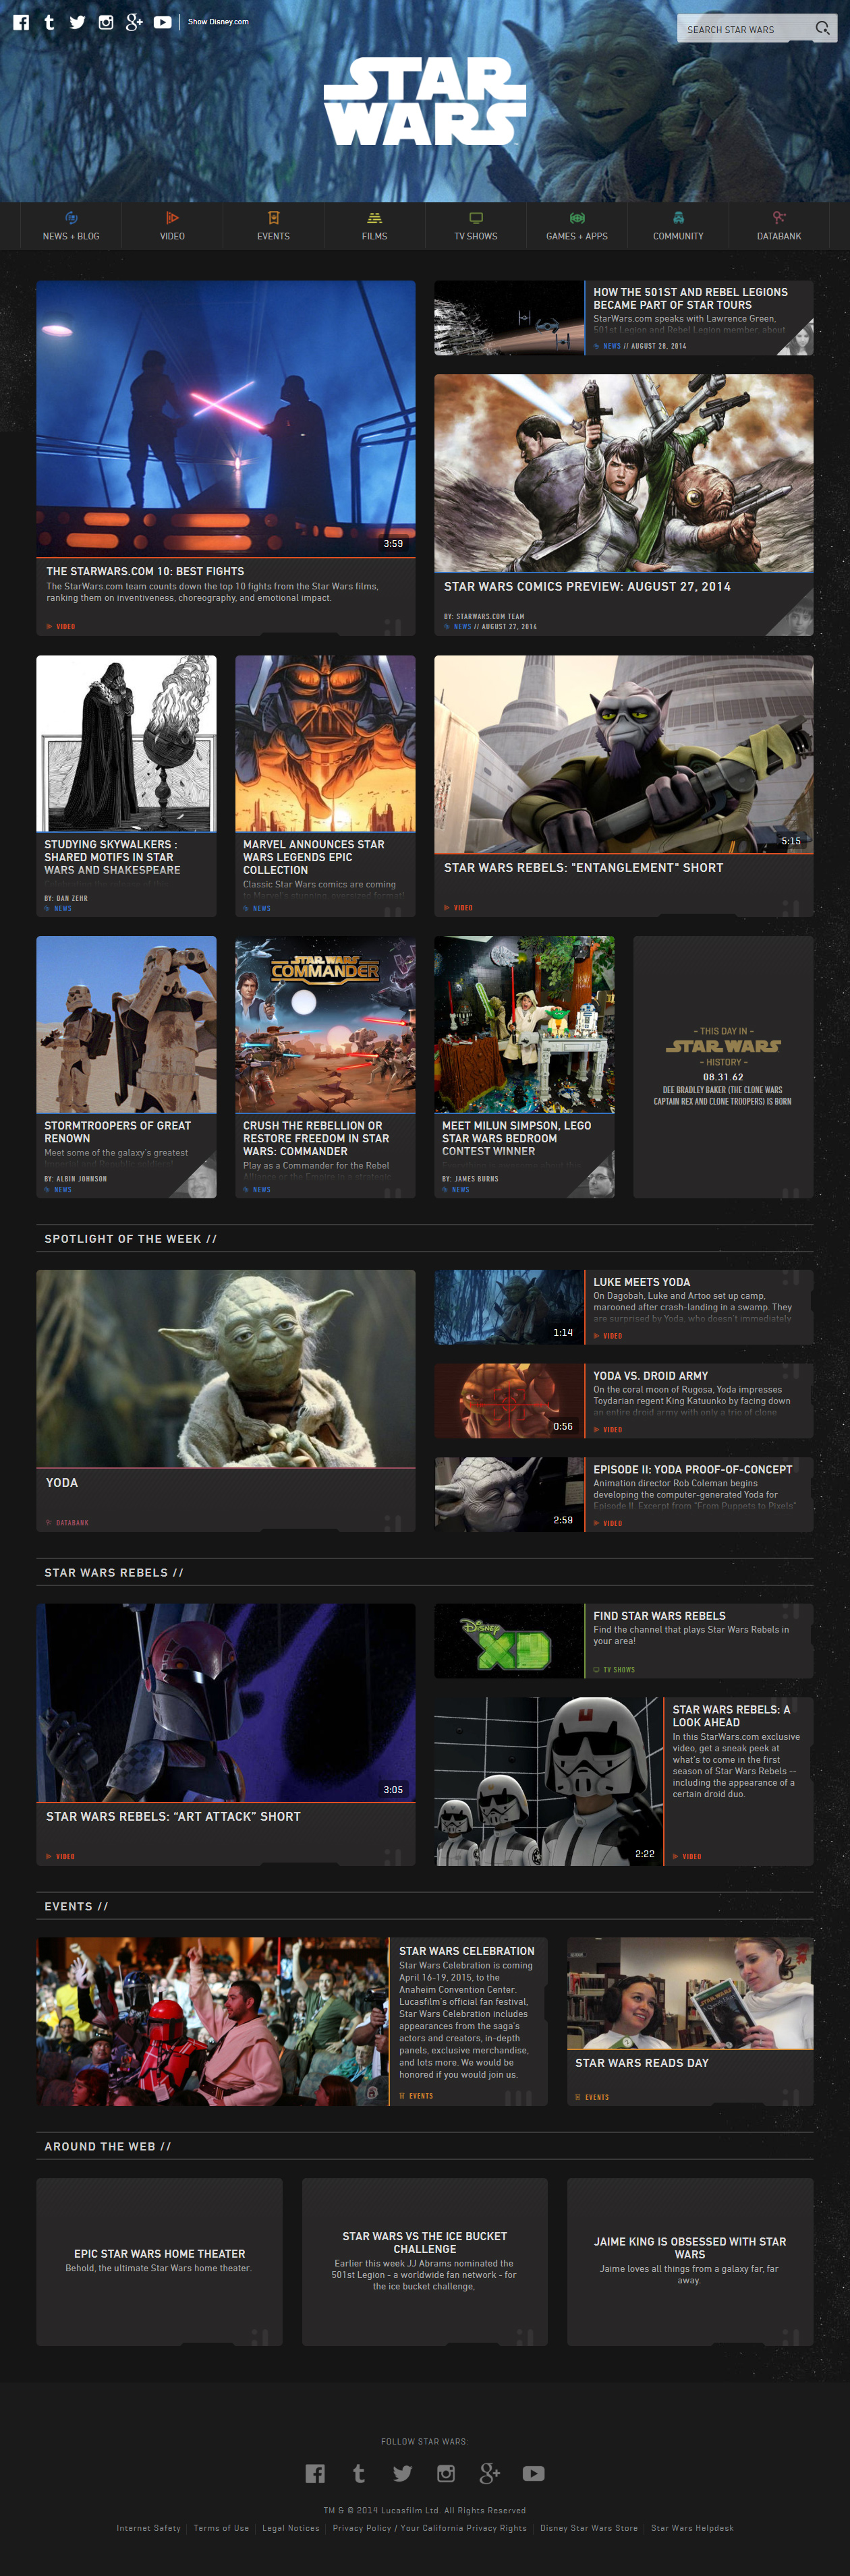 Star Wars website in 2014